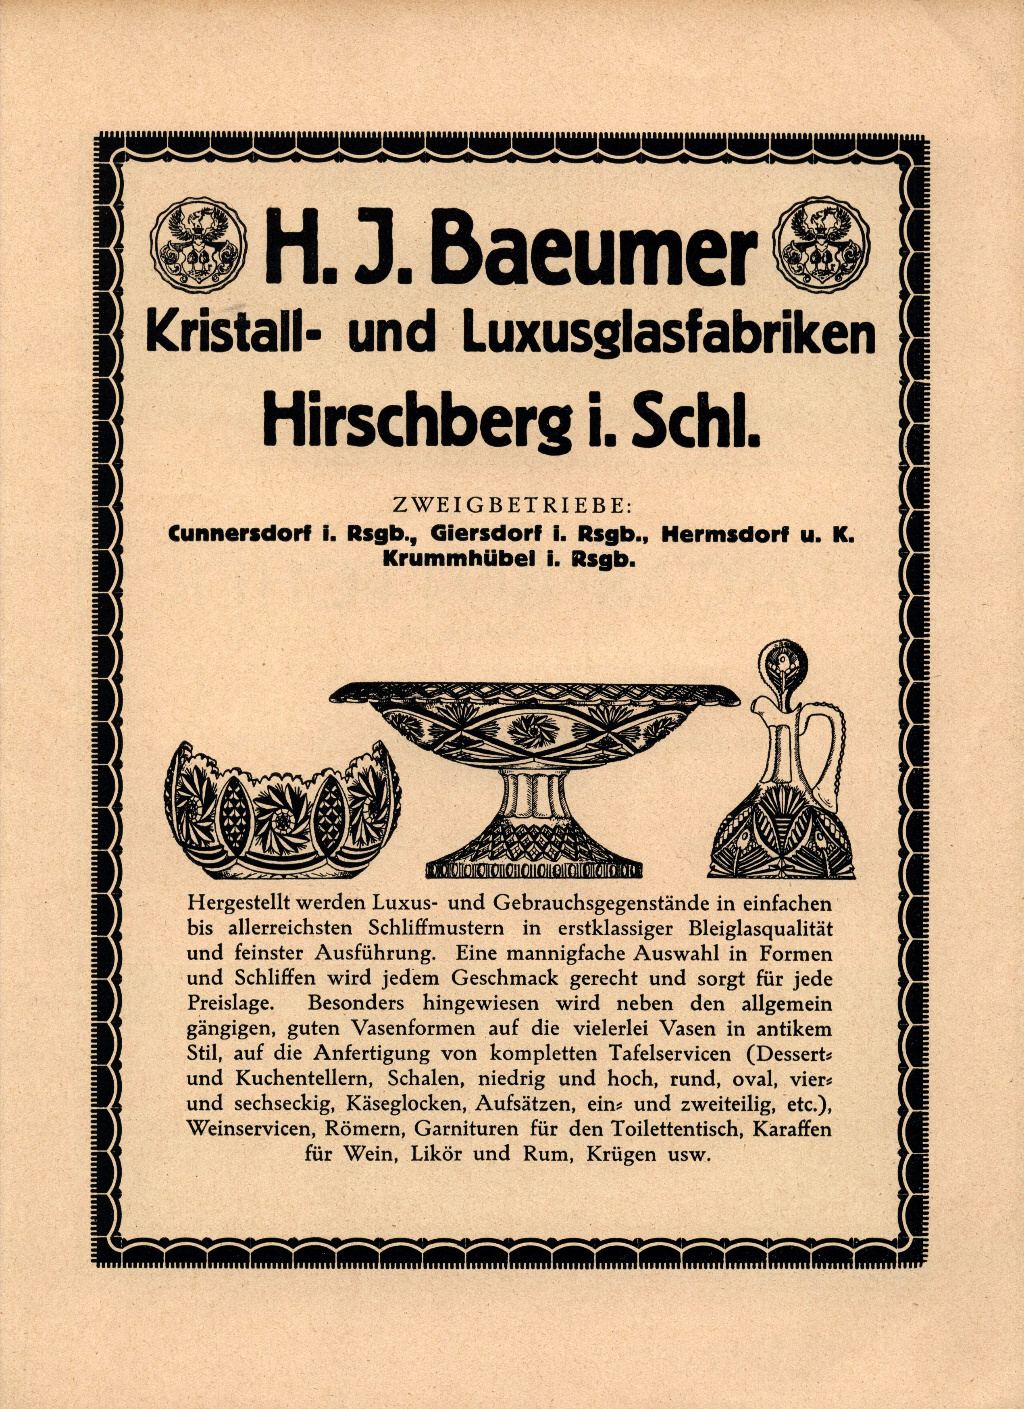 "H. J. Baeumer 1923"